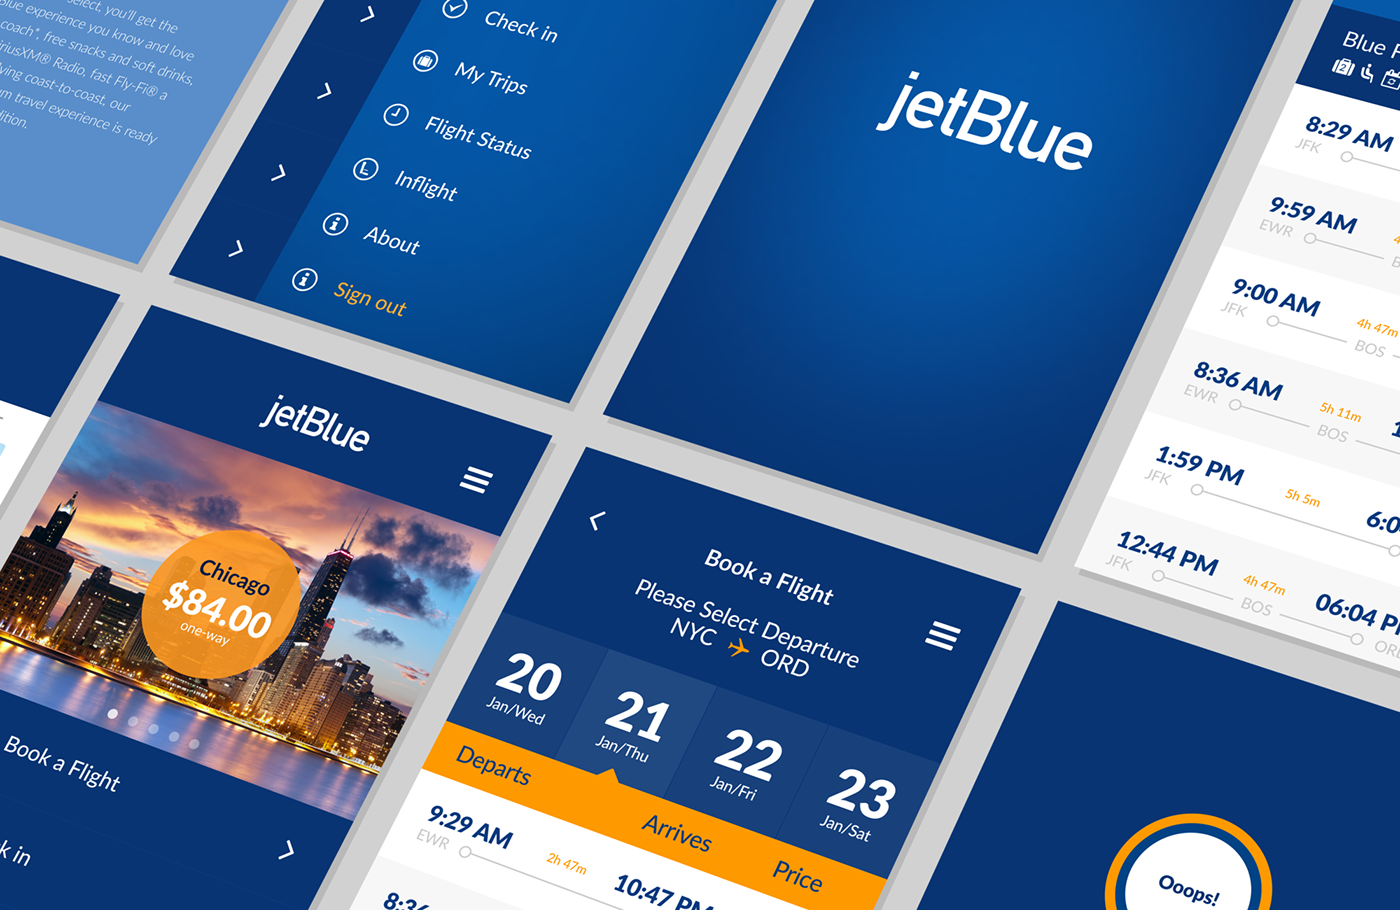 Jetblue app JetBlue APP Airline App Travel App ux UI ios android app design Expedia delta airlines Priceline Booking